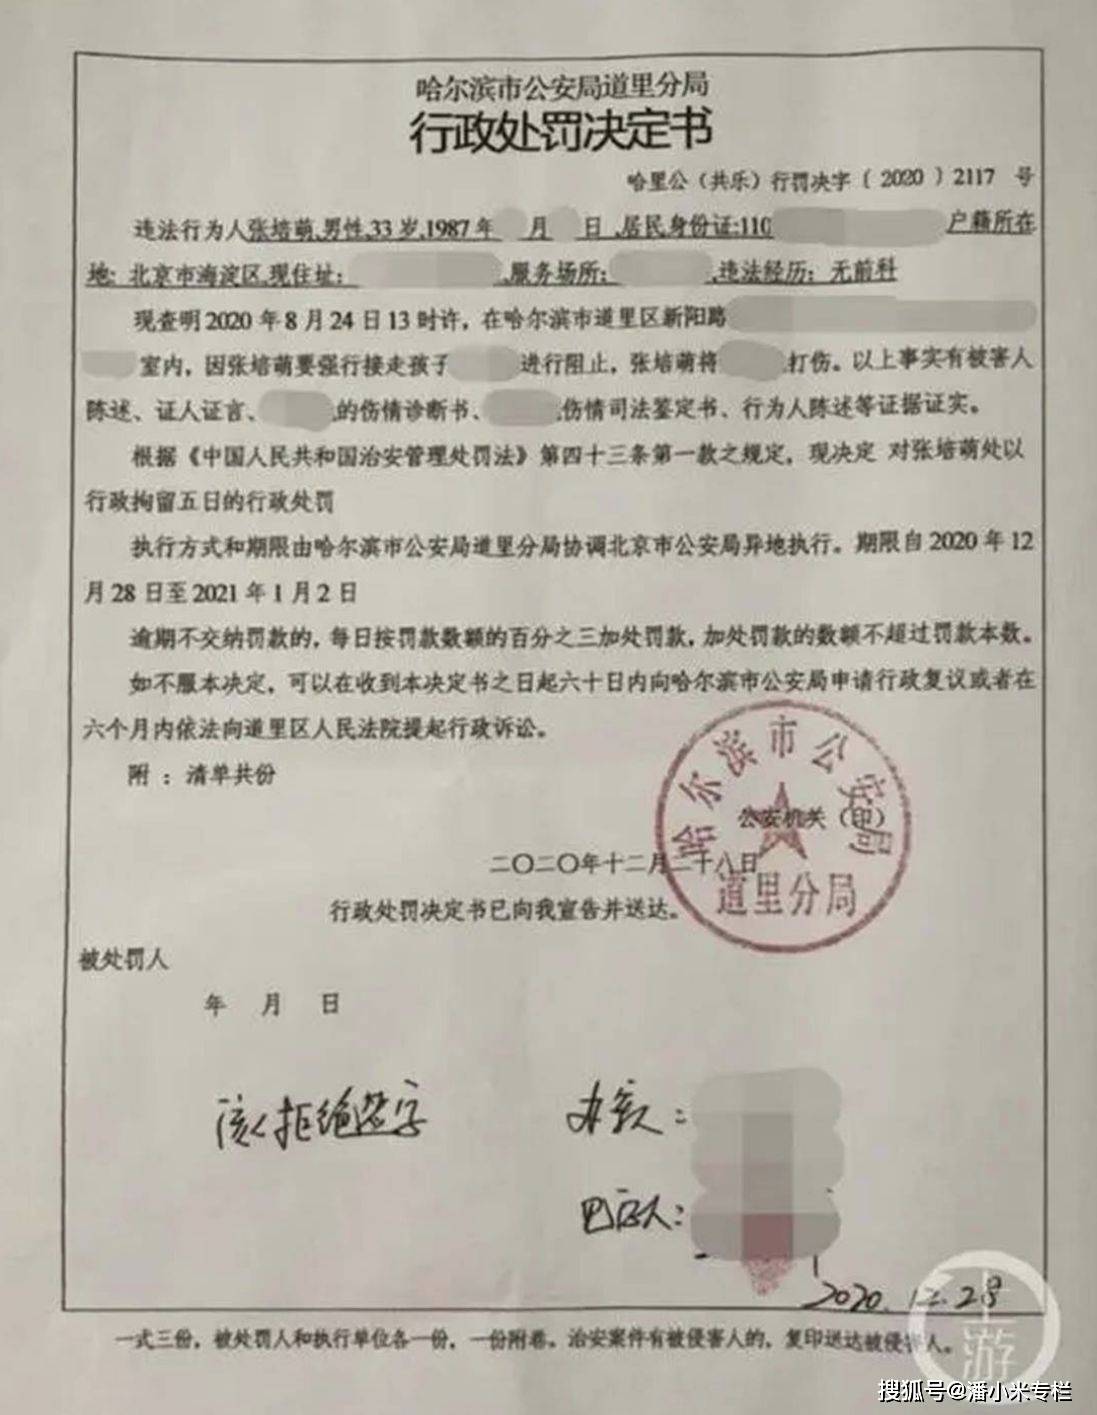 中国短跑名将张培萌， 重返公众视野， 深夜涉嫌殴打岳母被拘